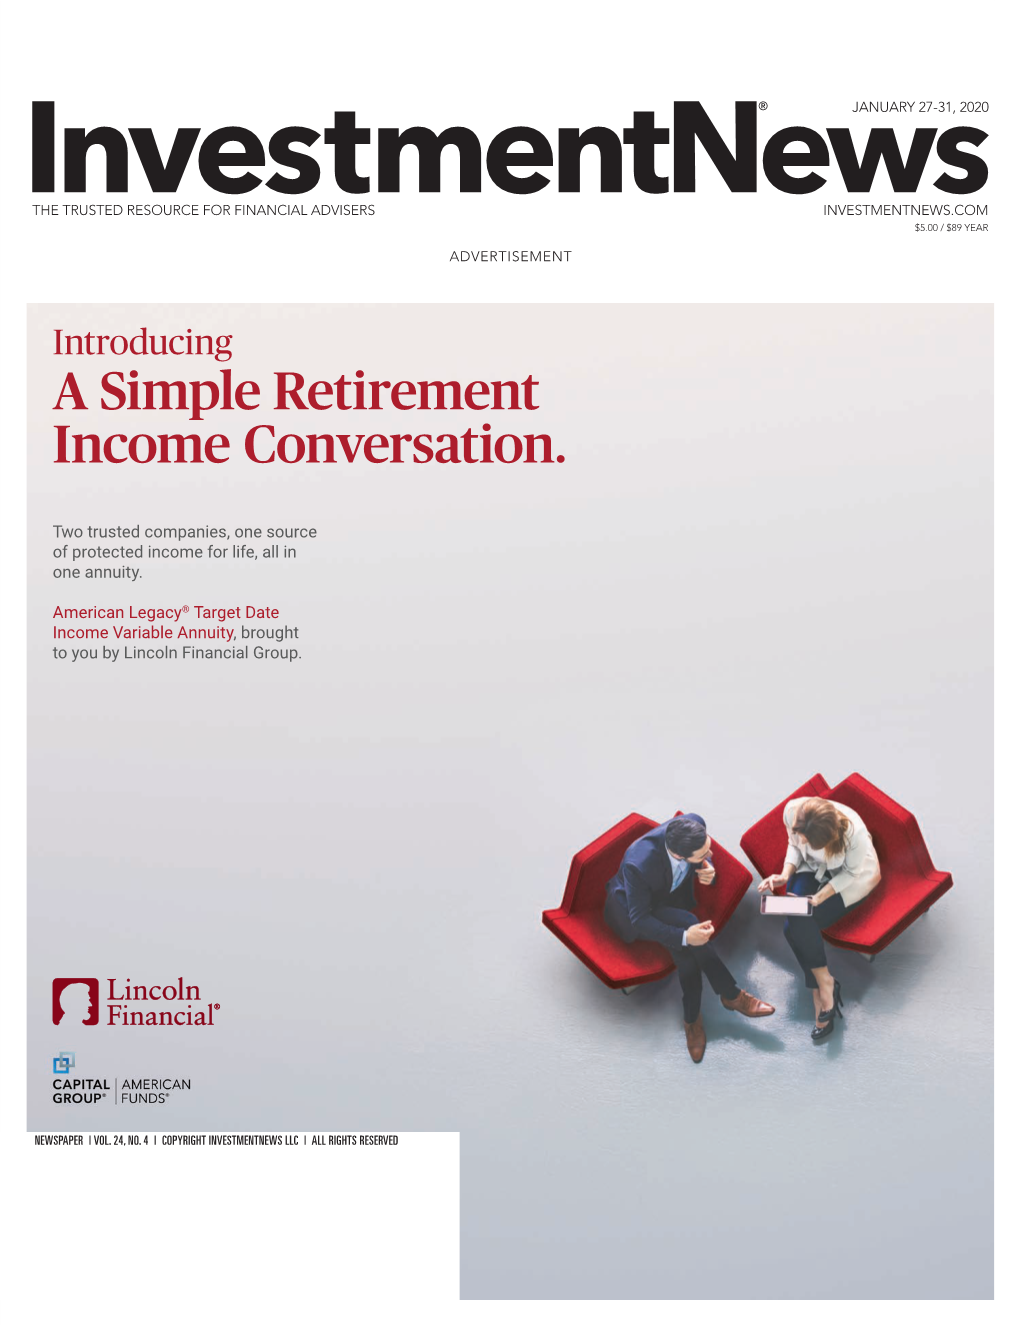 A Simple Retirement Income Conversation